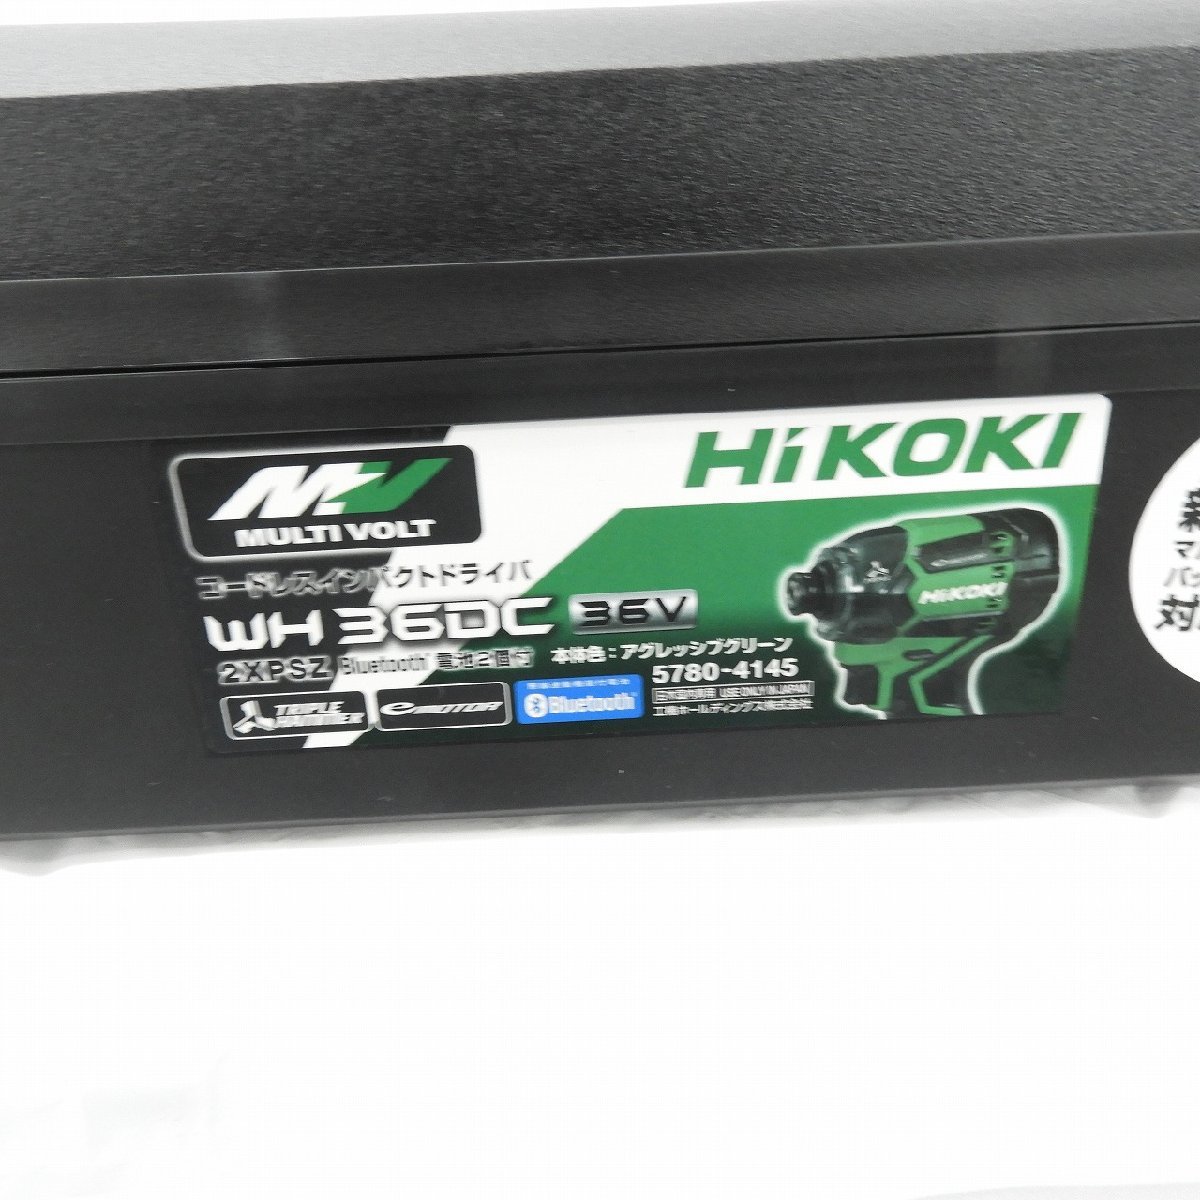 【未使用品】HiKOKI ハイコーキ コードレスインパクトドライバ WH36DC 2XPSZ アグレッシブグリーン 835114502 0218_画像3